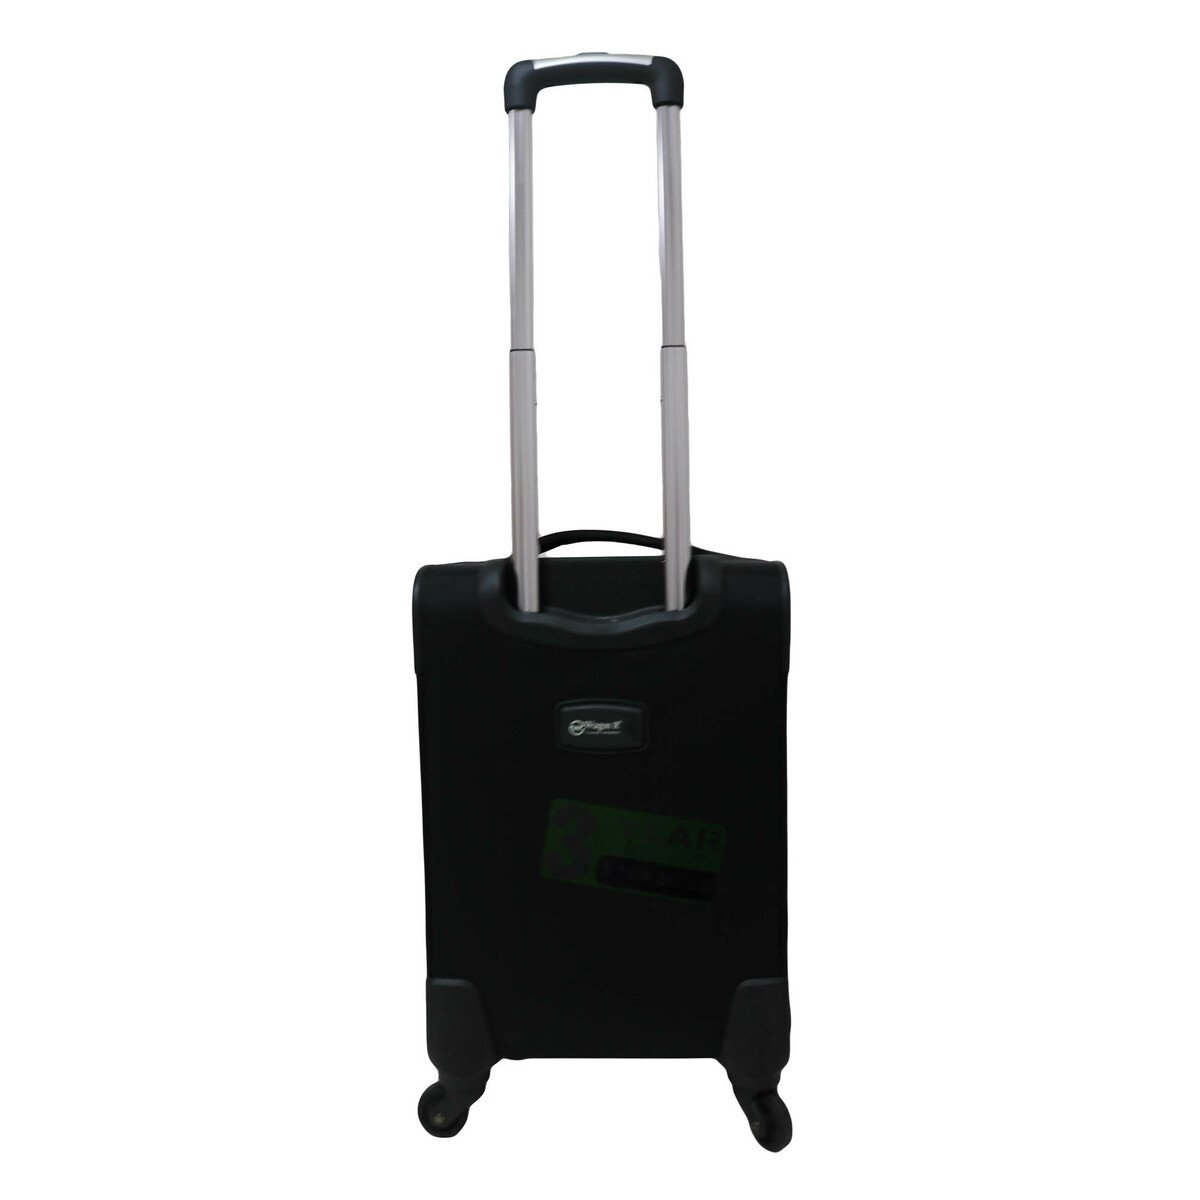 Wagon-R Soft Trolley Bag 19-5003TC 20in